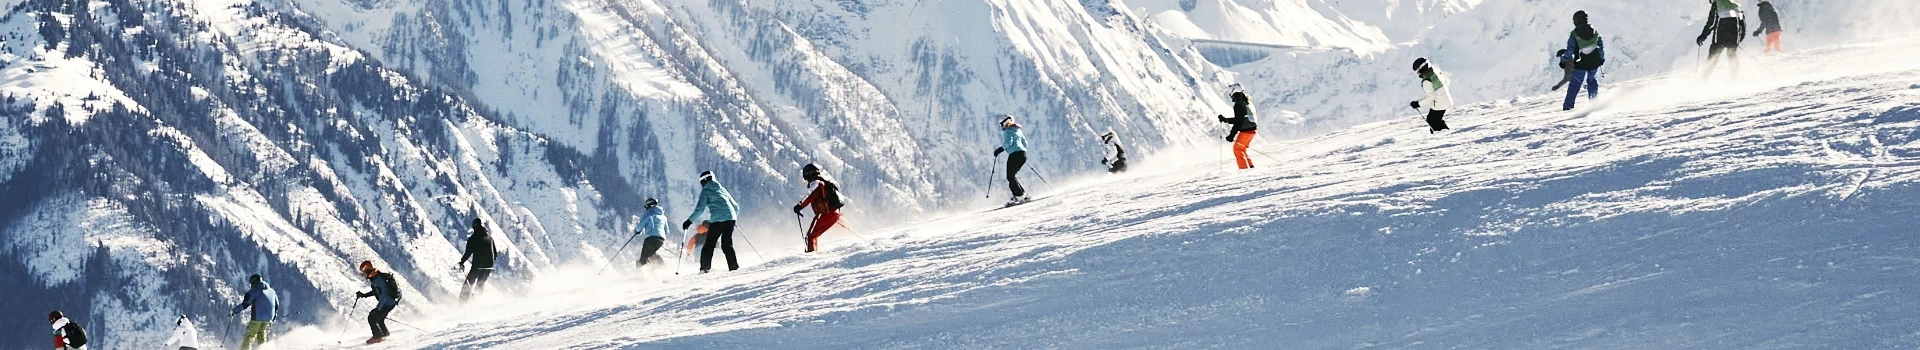 ludzie jeżdżący na nartach